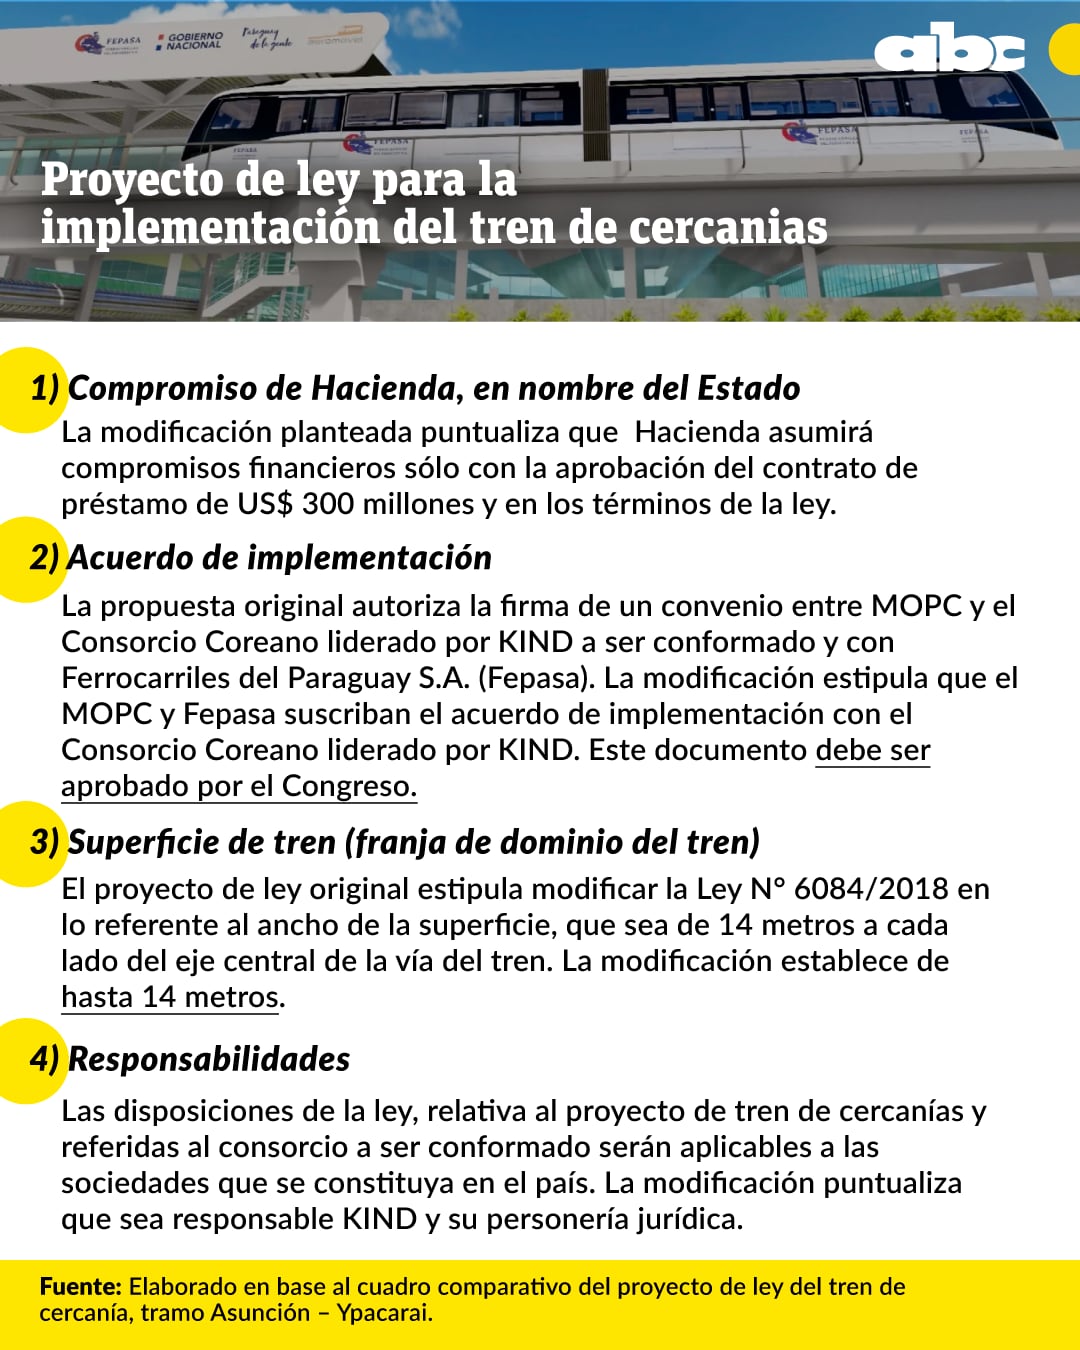 Resumen de las modificaciones que se buscará aplicar al proyecto de ley del tren de cercanías.